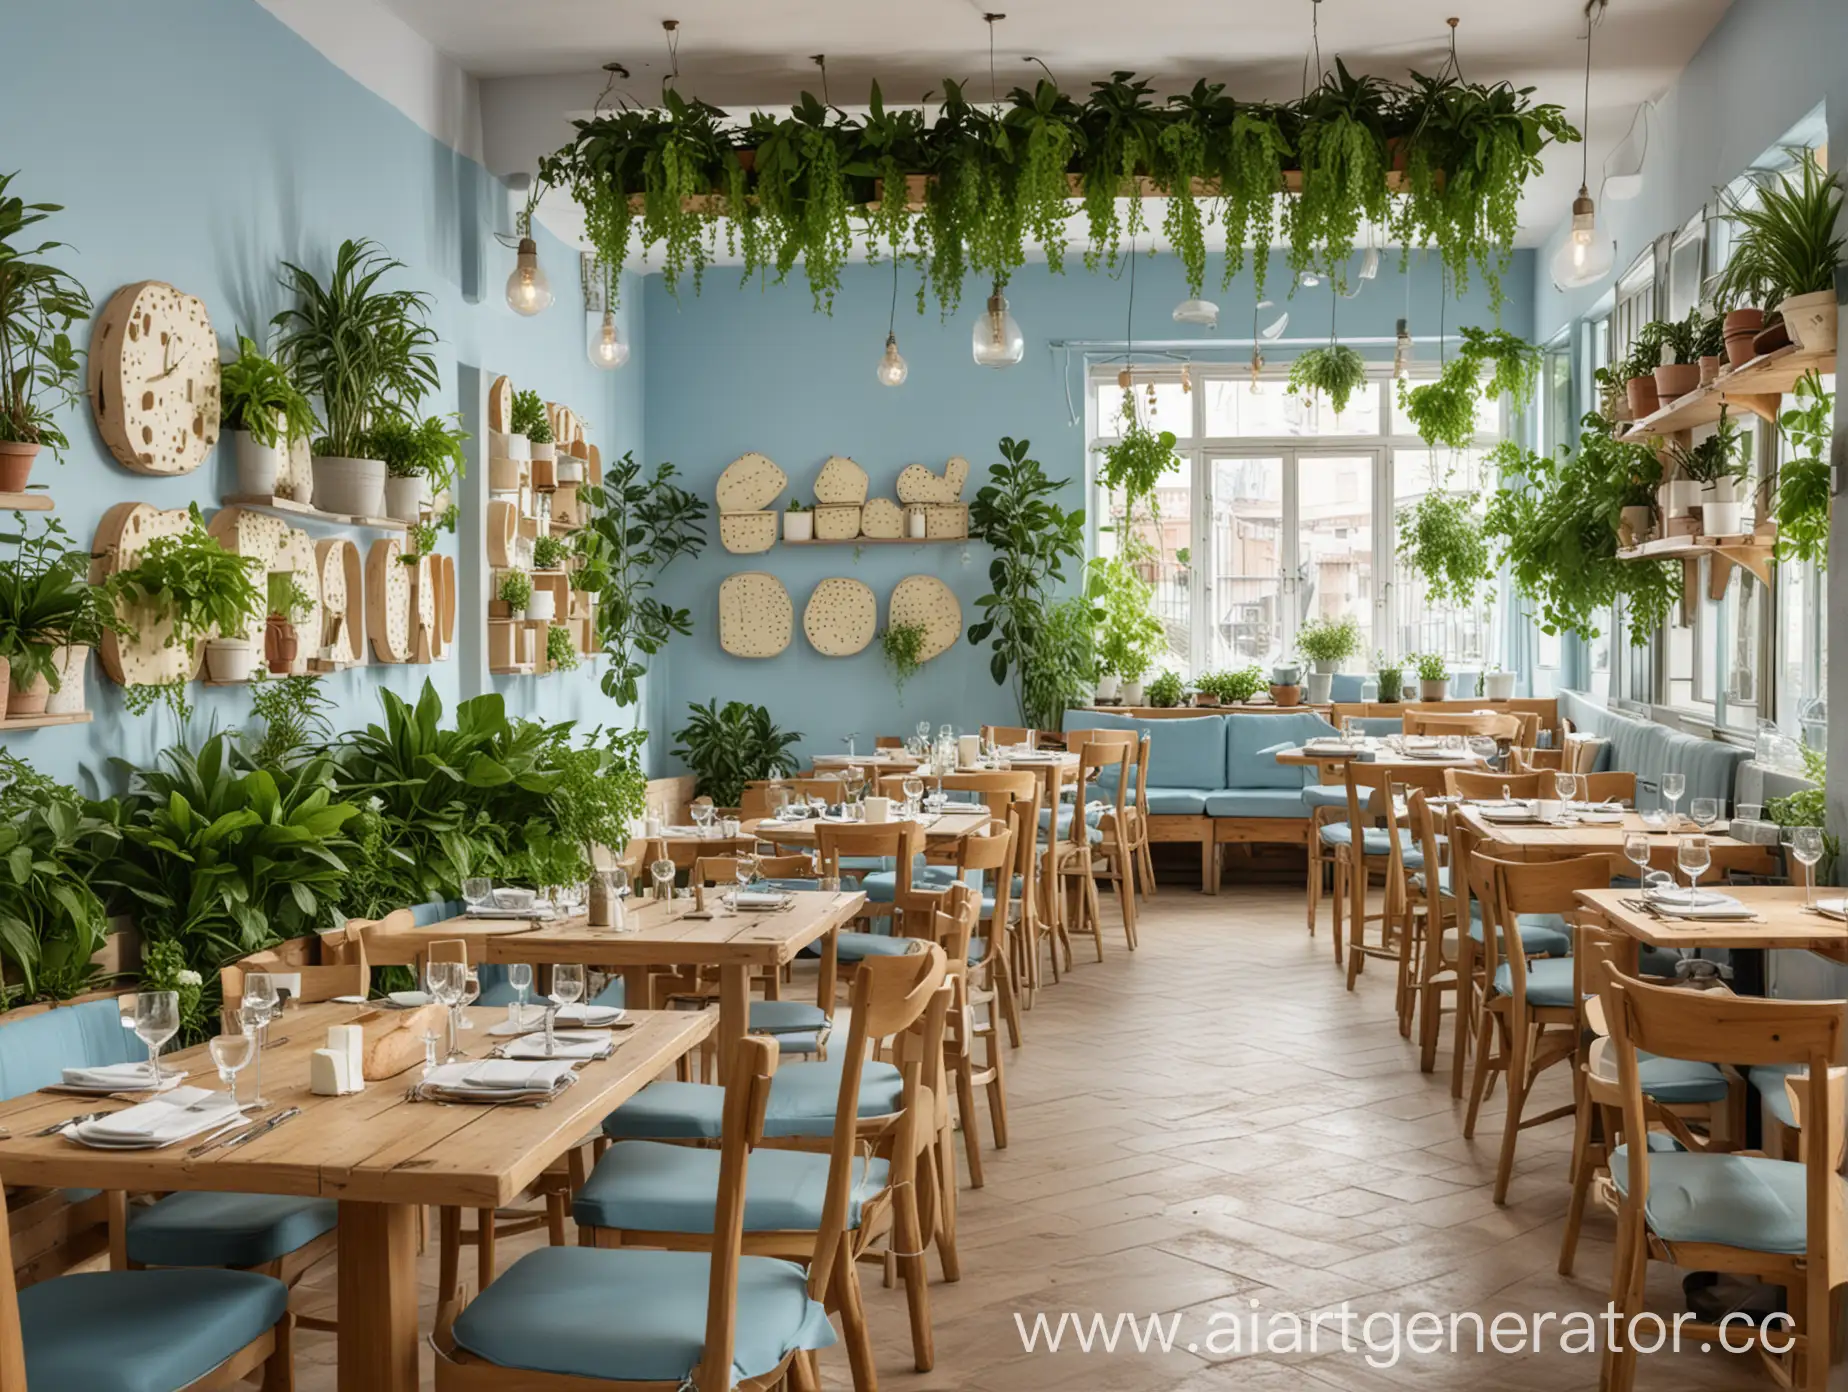 Сырный ресторан в светло-голубых и кремовых оттенках с деревянной мебелью и большим количеством зелёных растений в горшках